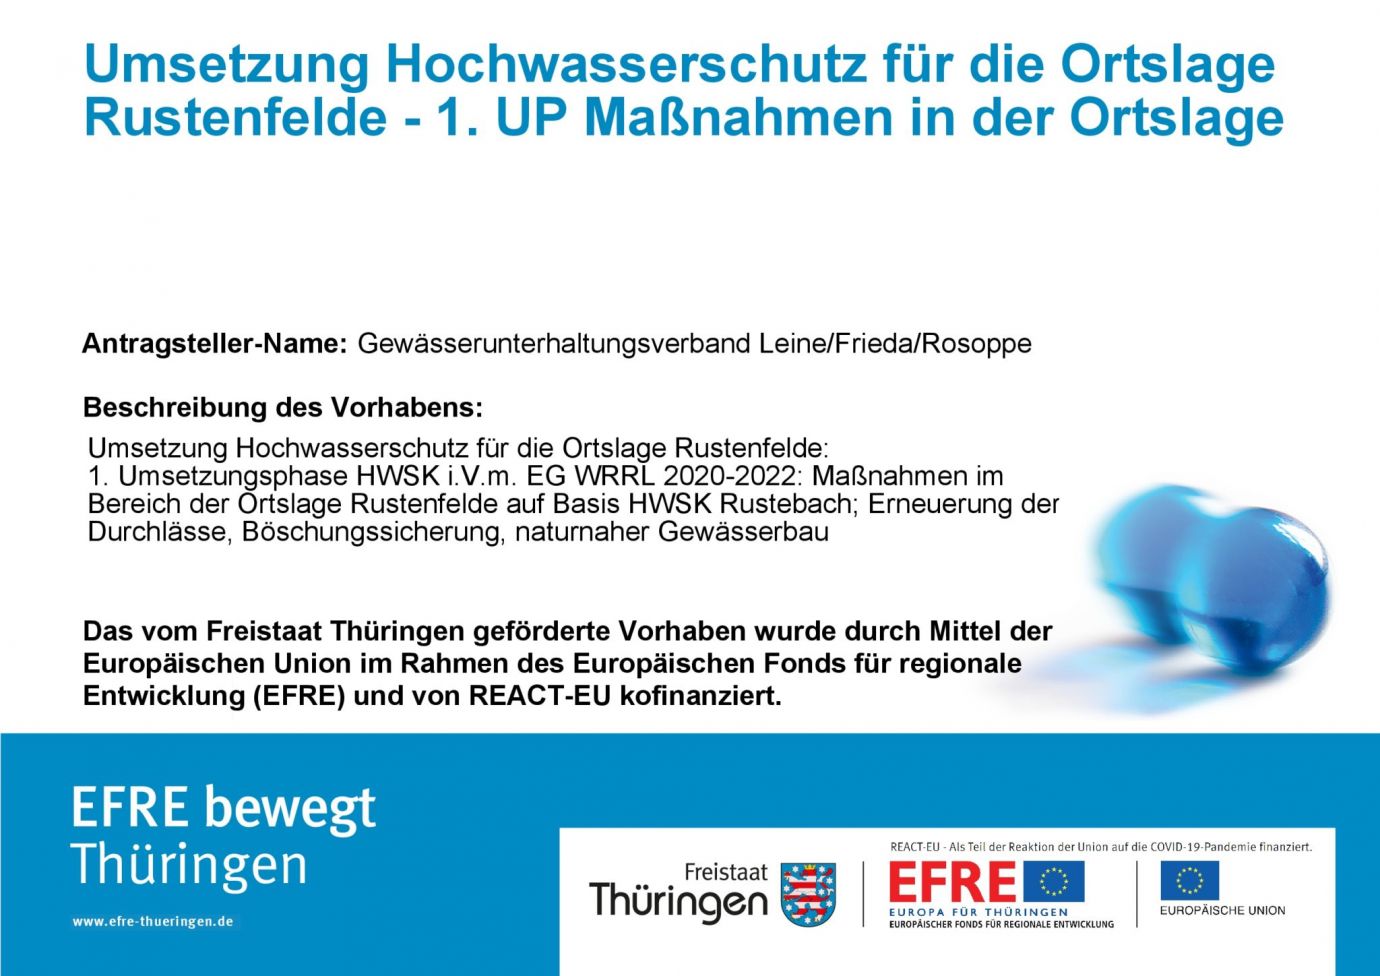 Bildtitel: Umsetzung Hochwasserschutz für die Ortslage Rustenfelde - 1. UP Maßnahmen in der Ortslage